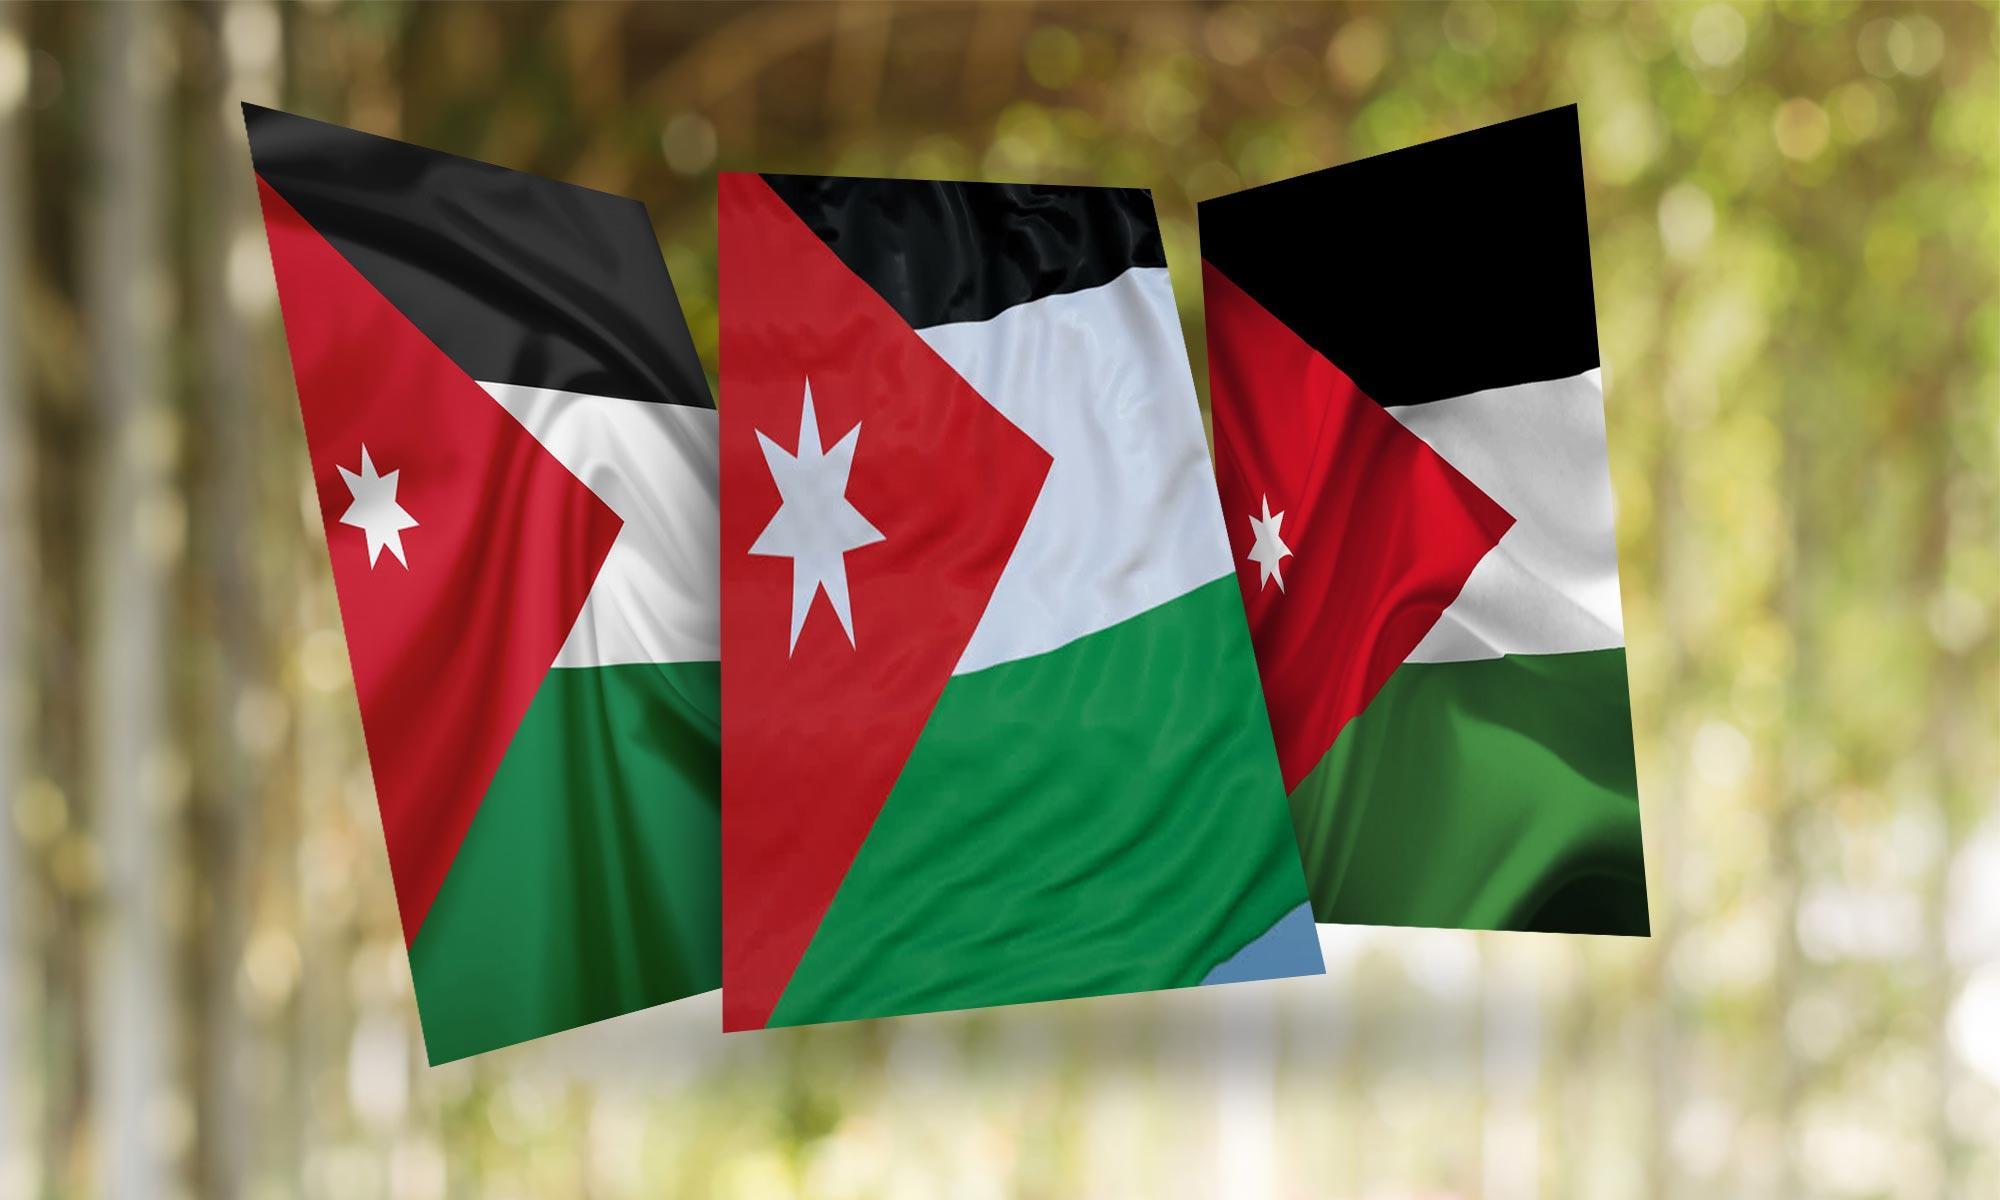 Jordan Flag Wallpapers